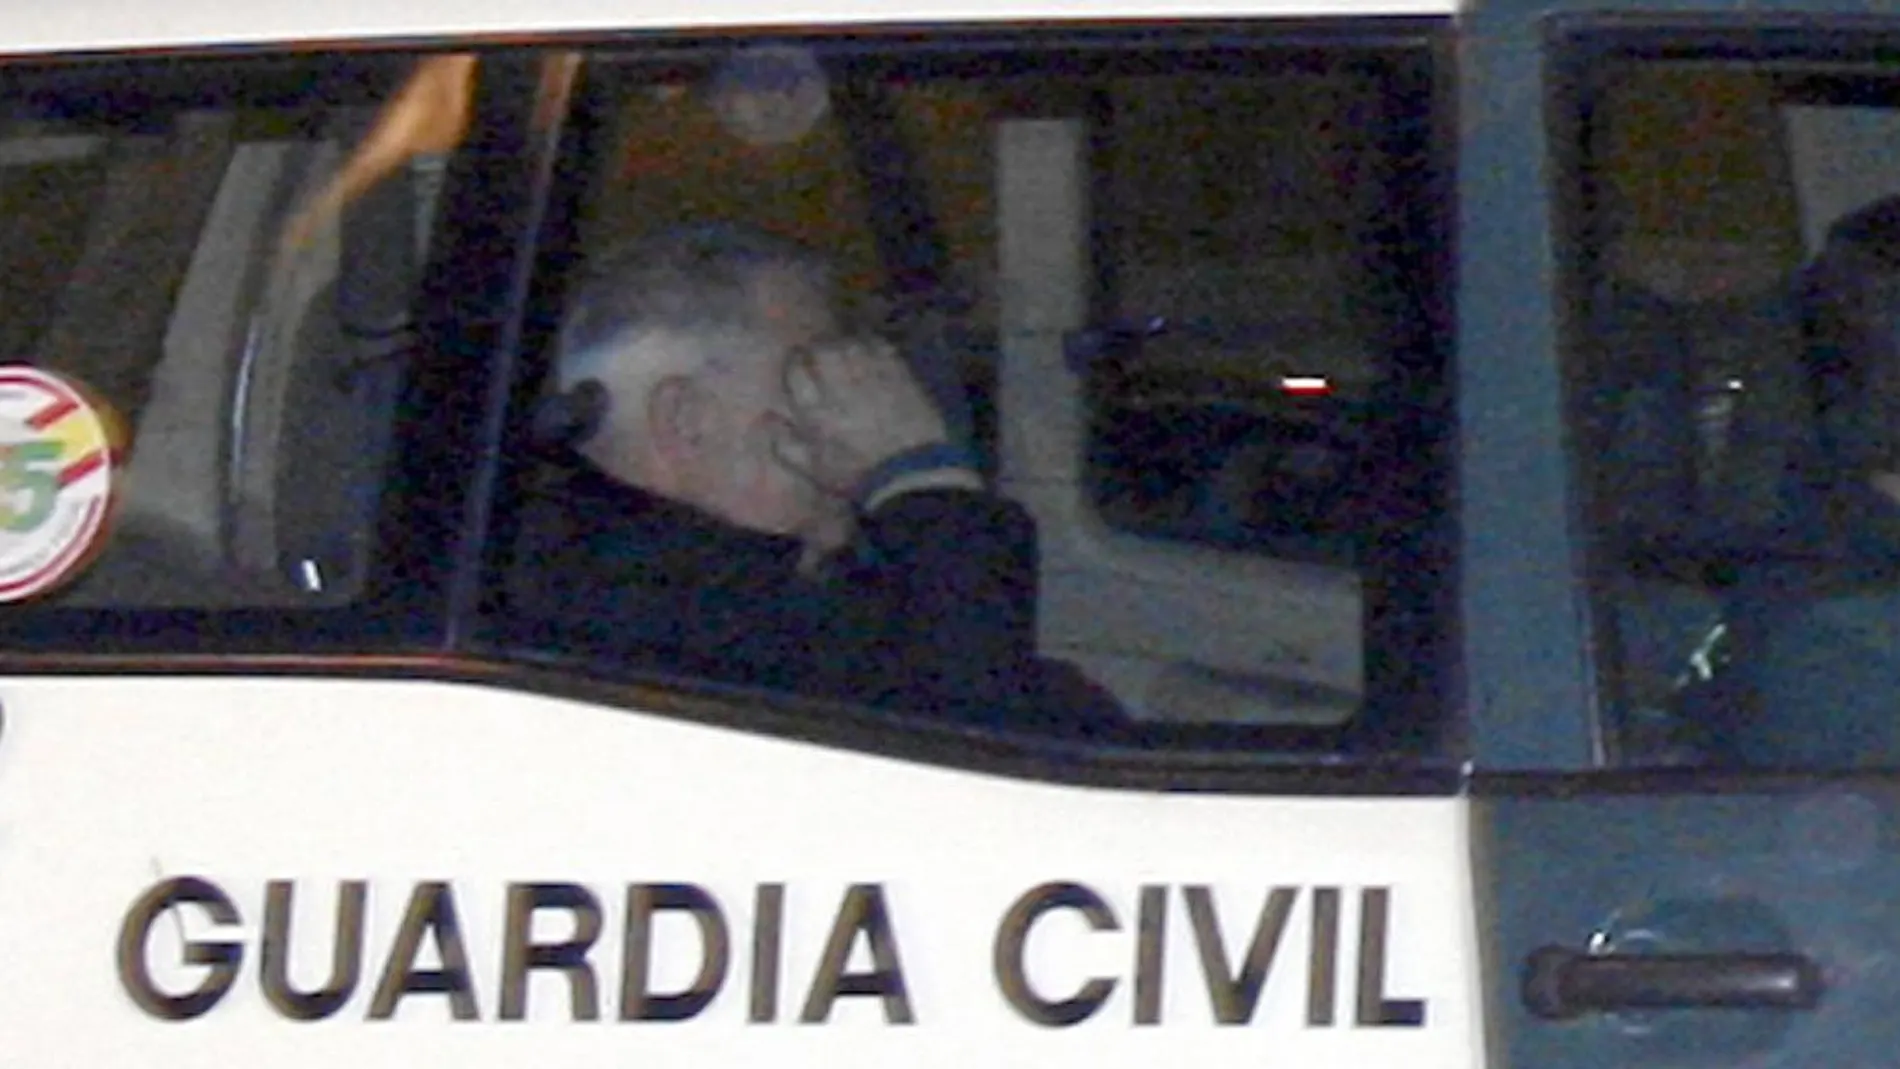 Andreu Viloca, que ya estuvo en prisión por esta causa, fue detenido de nuevo el pasado día 2 por la Guardia Civil